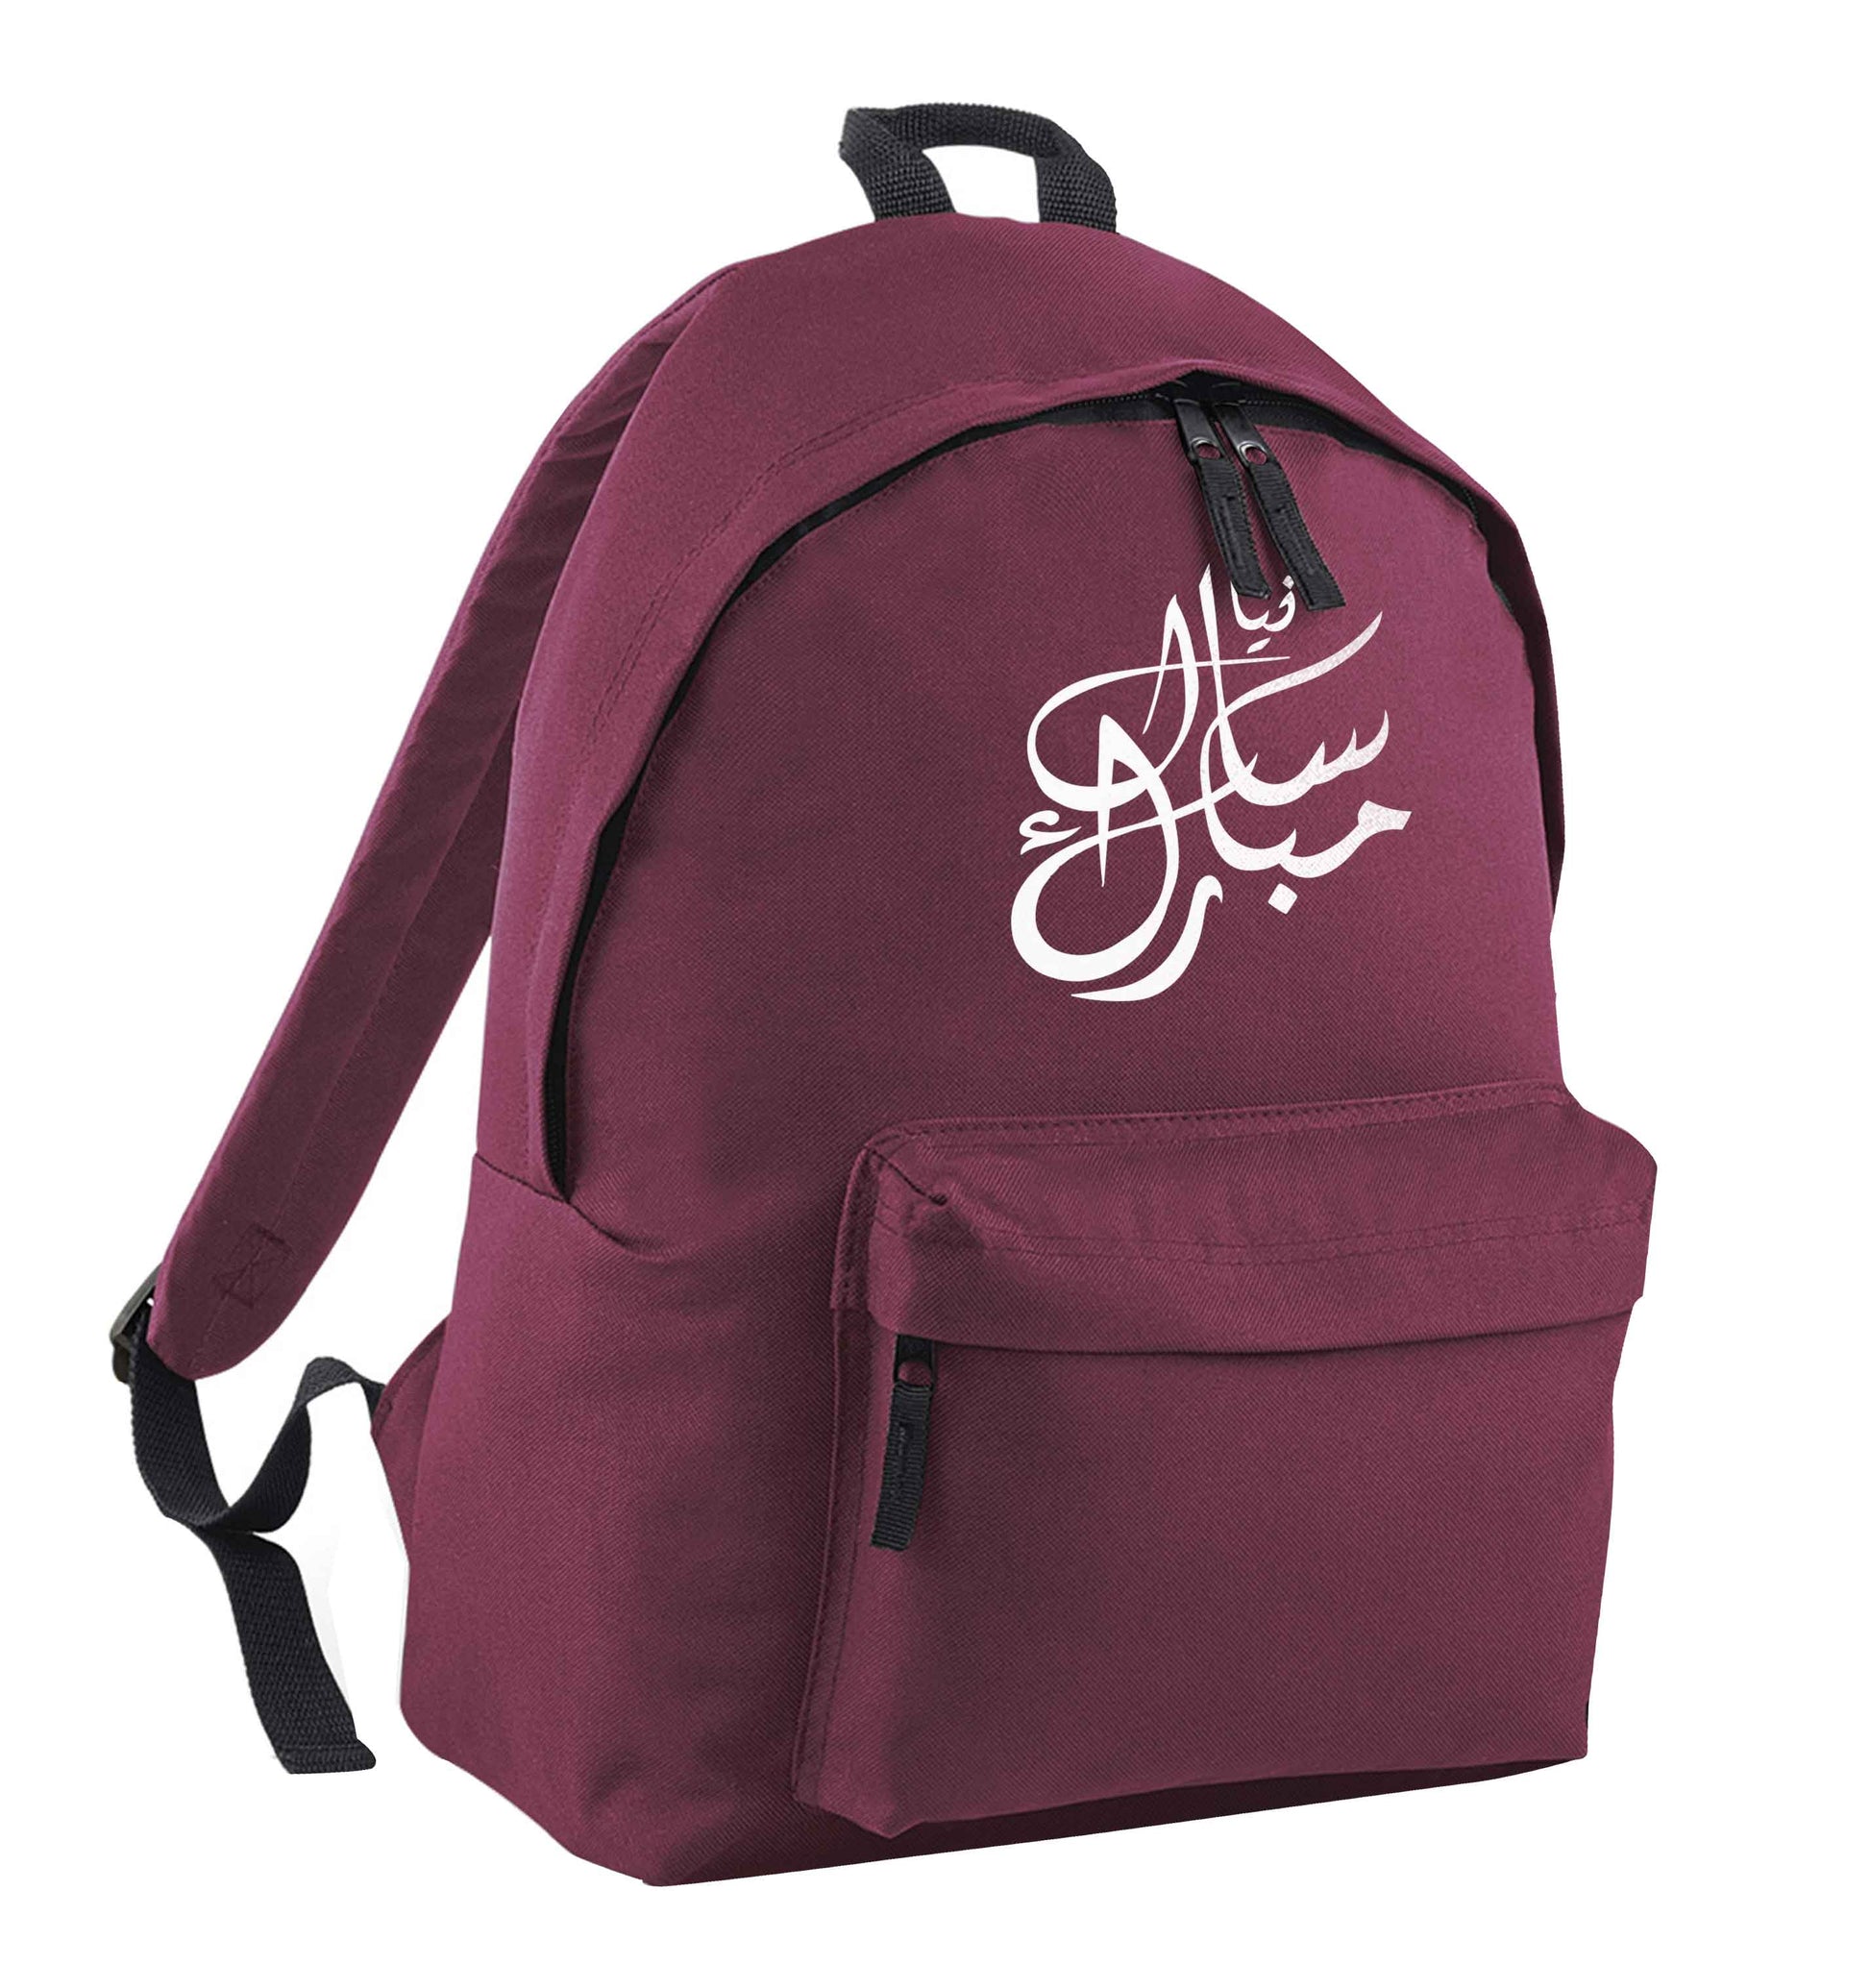 Urdu Naya saal mubarak maroon adults backpack